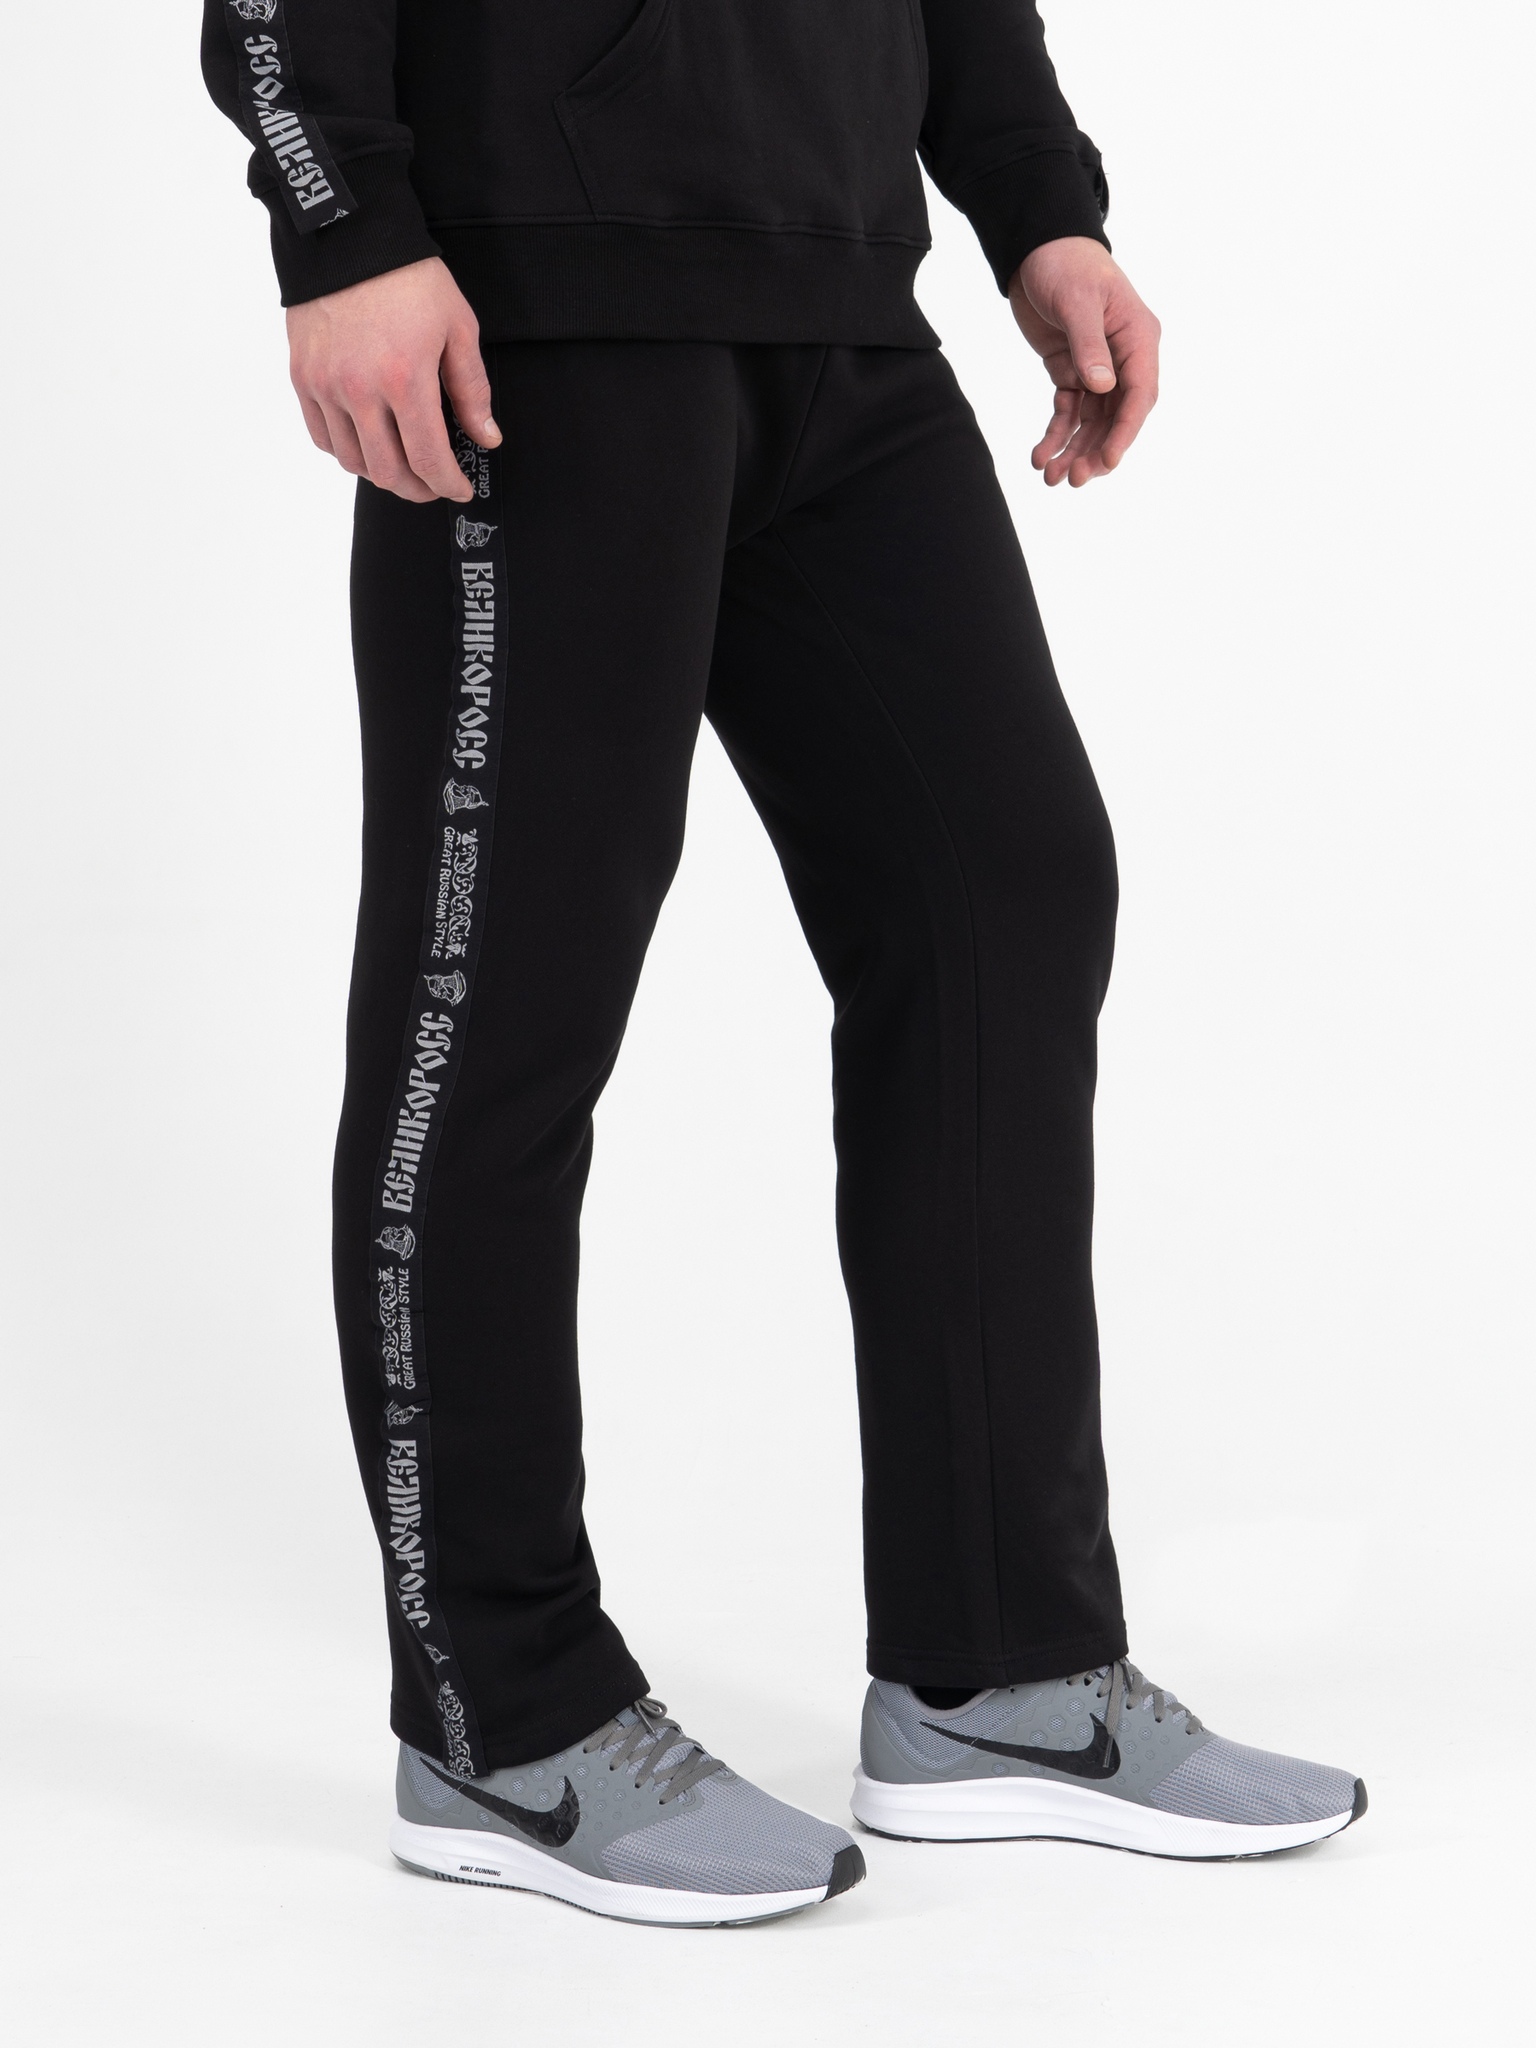 фото Спортивные брюки мужские великоросс bm черные 46 ru